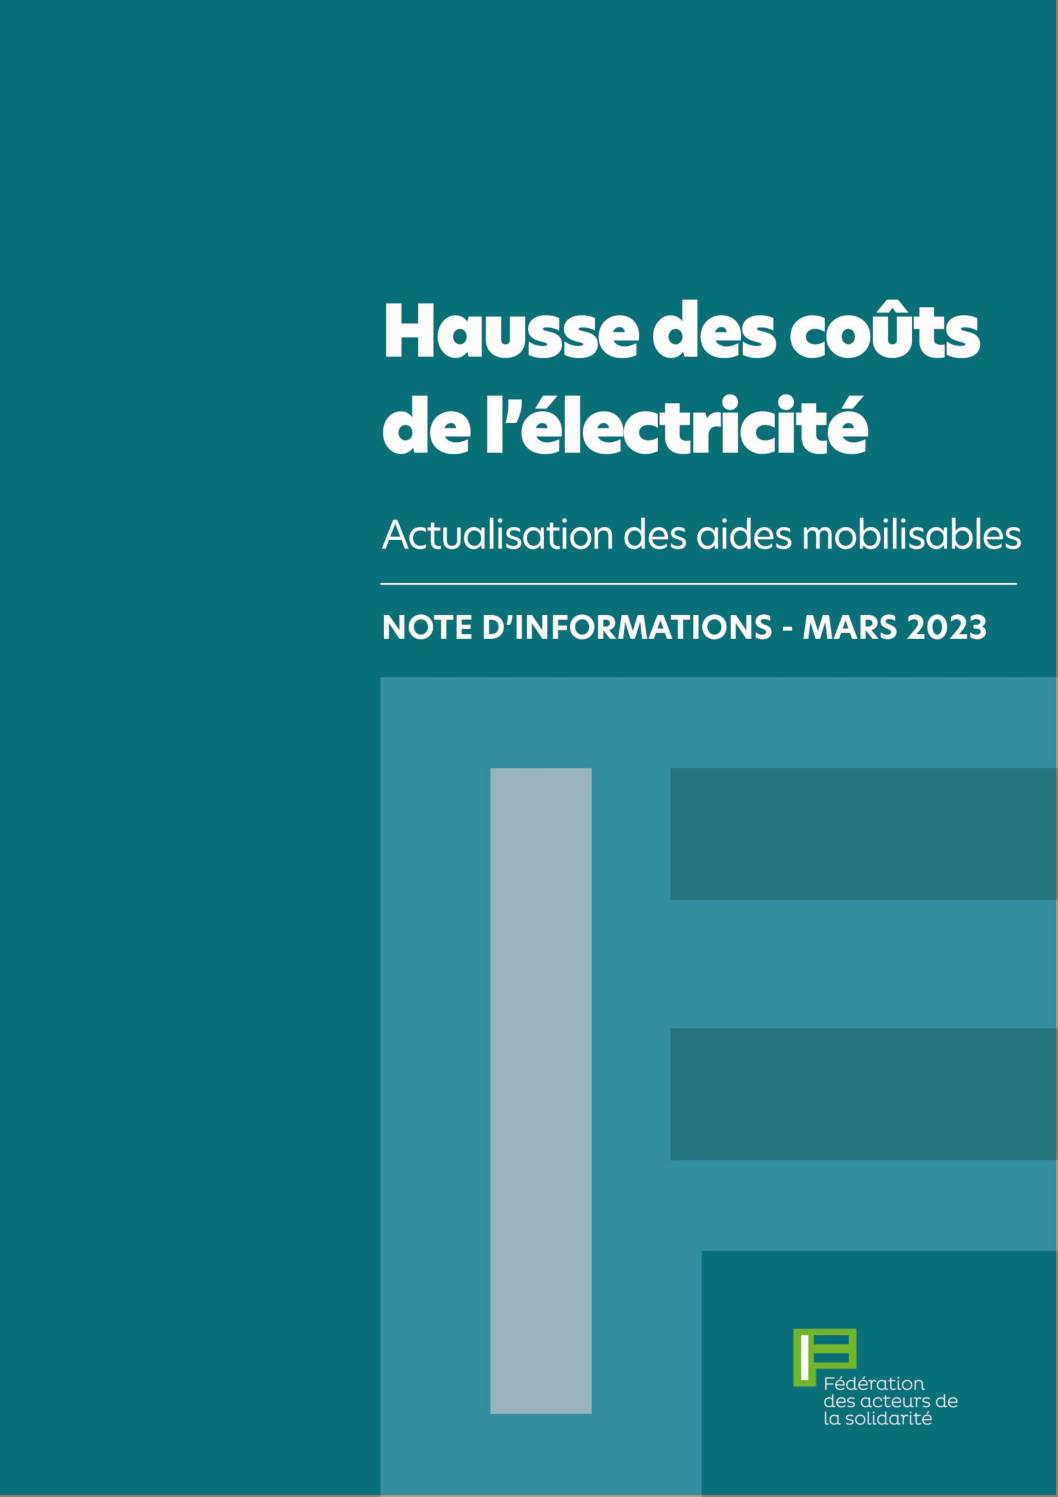 Note d'informations - Hausse des coûts de l'électricité